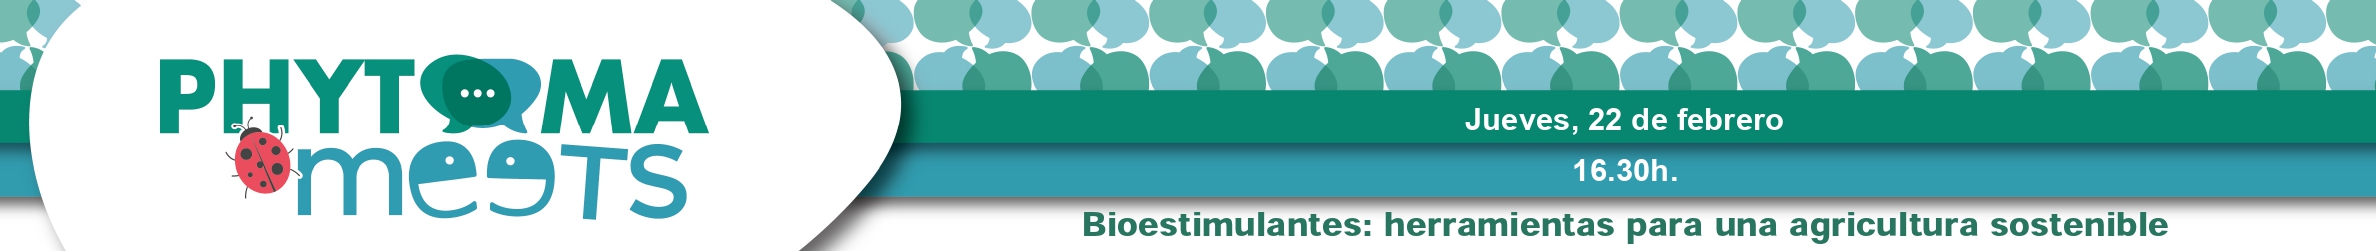 Phytoma meets banner 1140x120 bioestimulantes